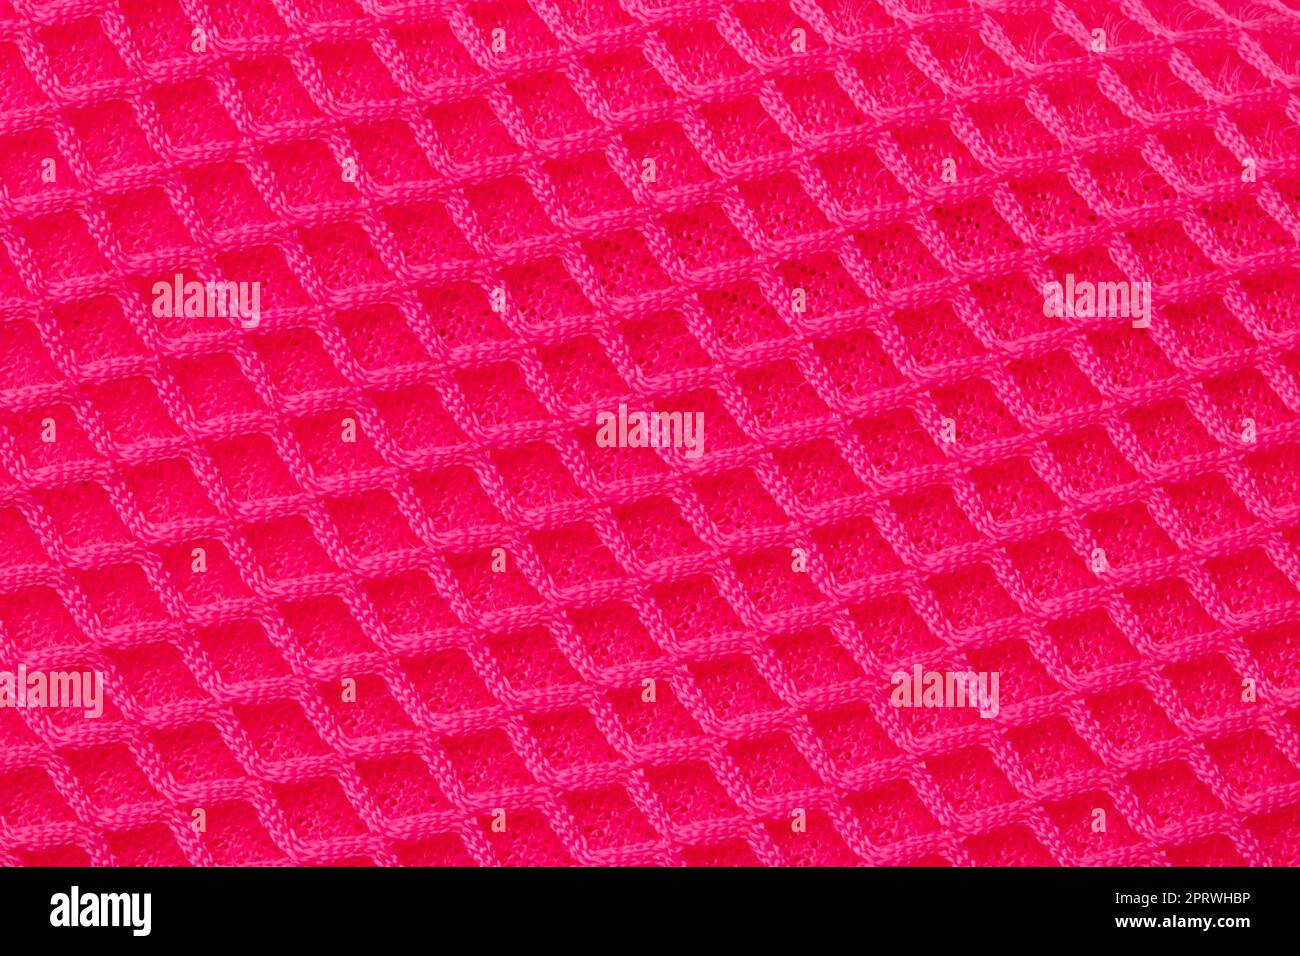 Rote Stoffstruktur. Nahaufnahme eines elastischen, scharlachroten Nylongewebes mit nahtlosem Muster für Sportgeräte, Rucksäcke, Taschen oder andere Kleidungsstücke. Makro. Stockfoto